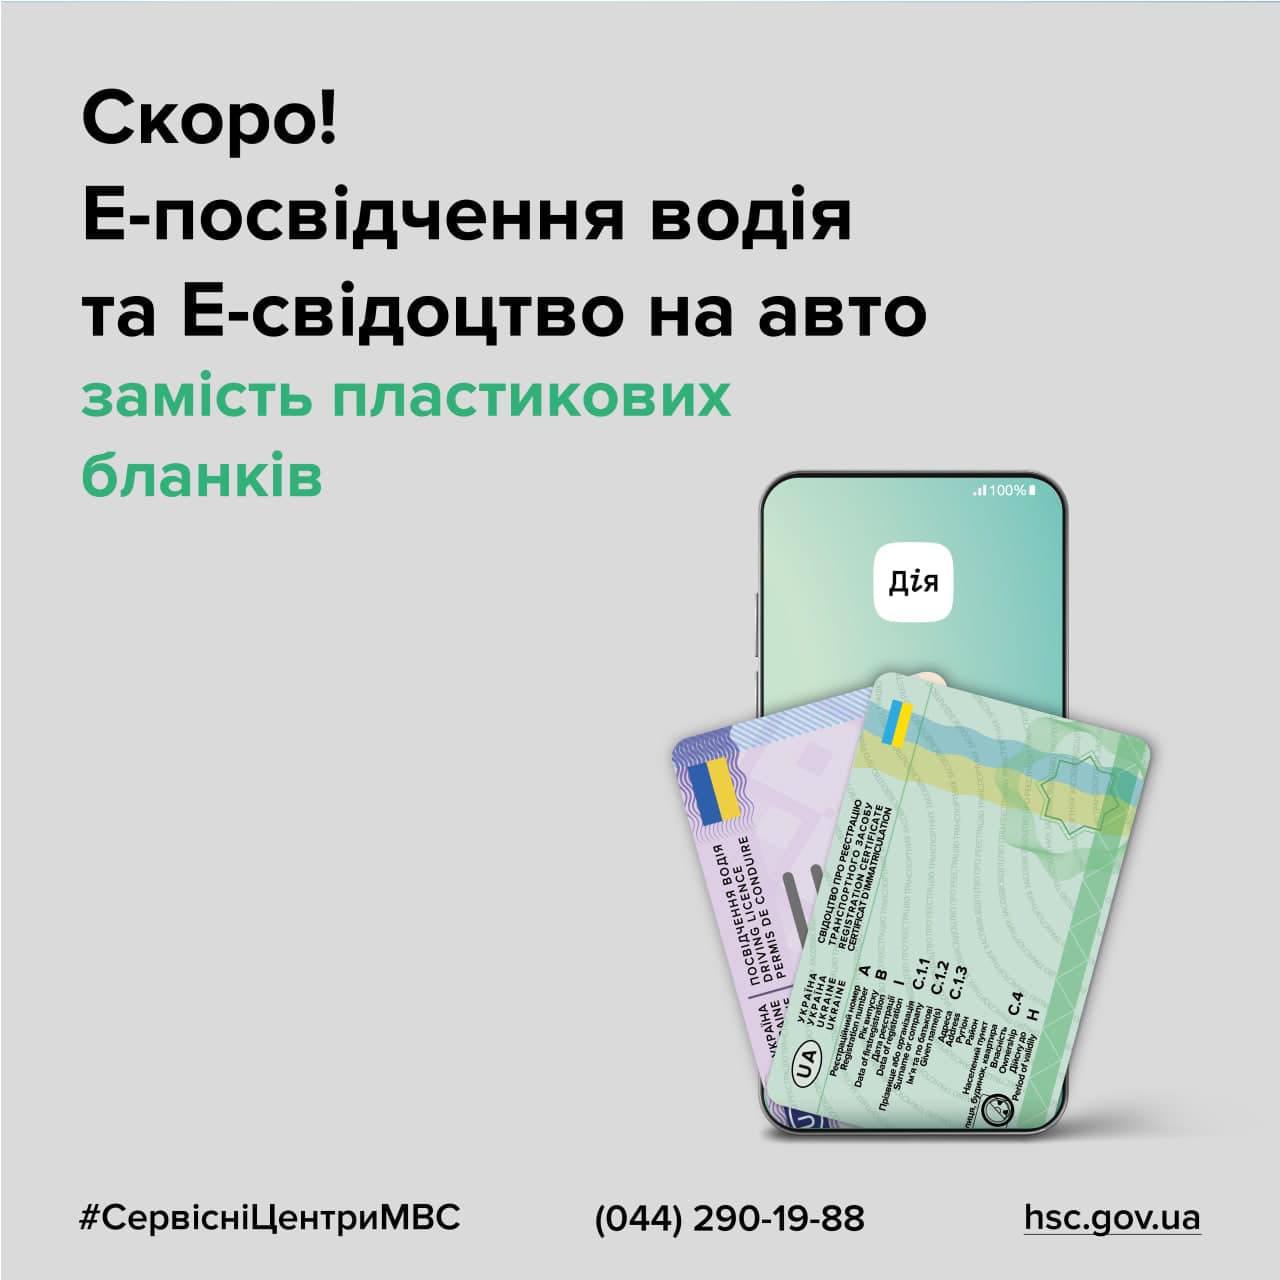 В Украине с 14 декабря можно будет регистрировать авто или оформить водительское удостоверение без использования пластиковых бланков